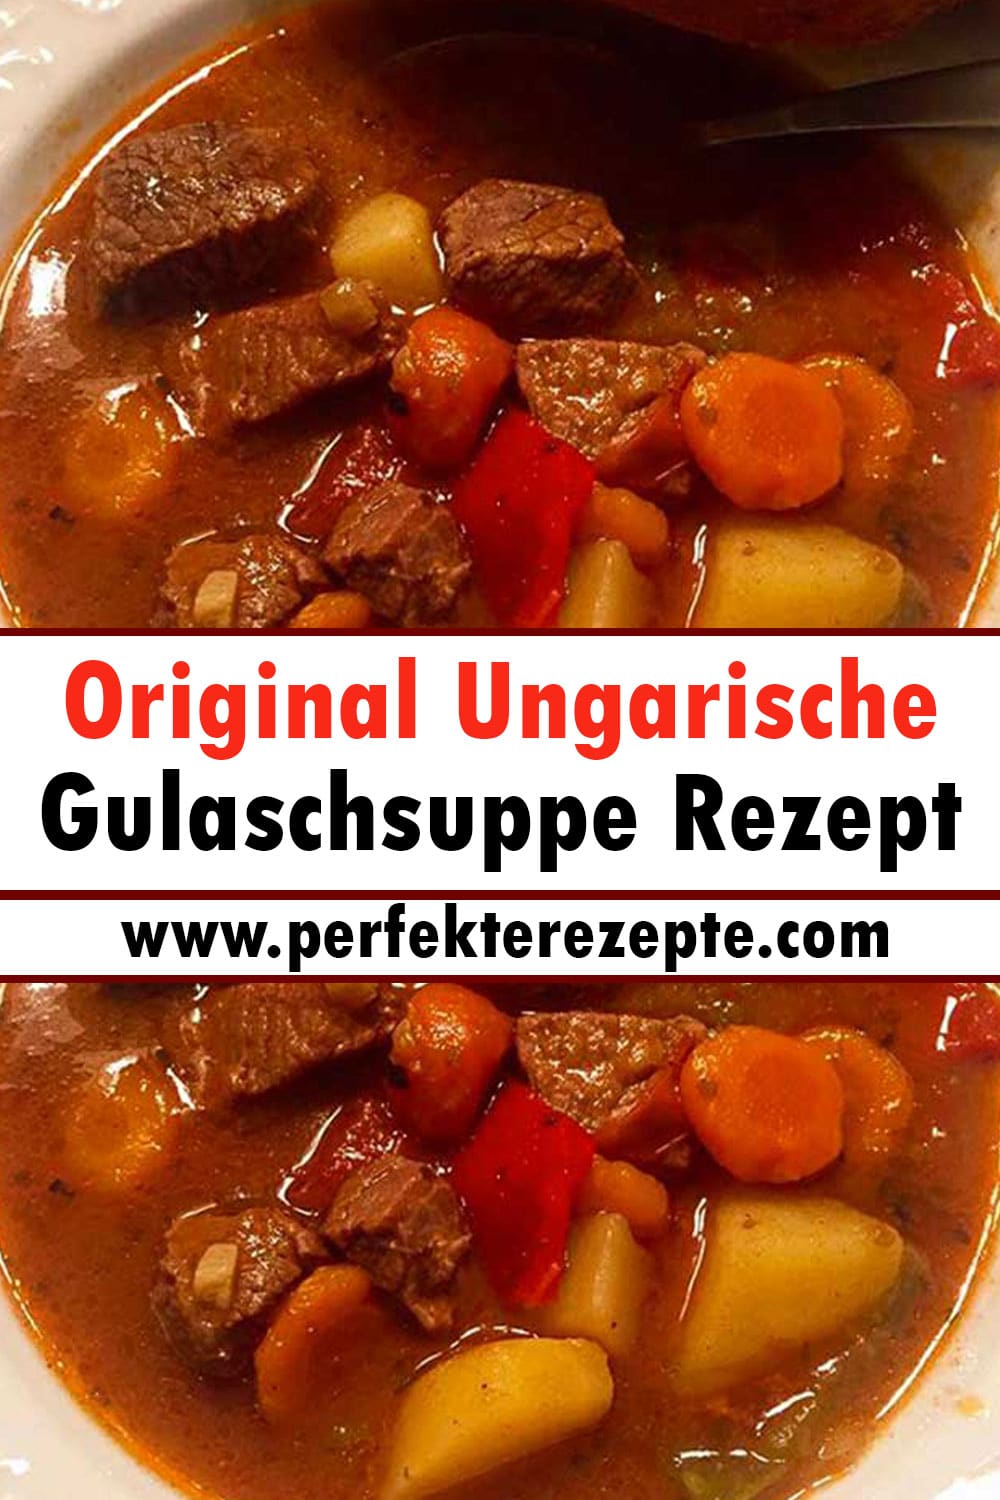 Original Ungarische Gulaschsuppe Rezept